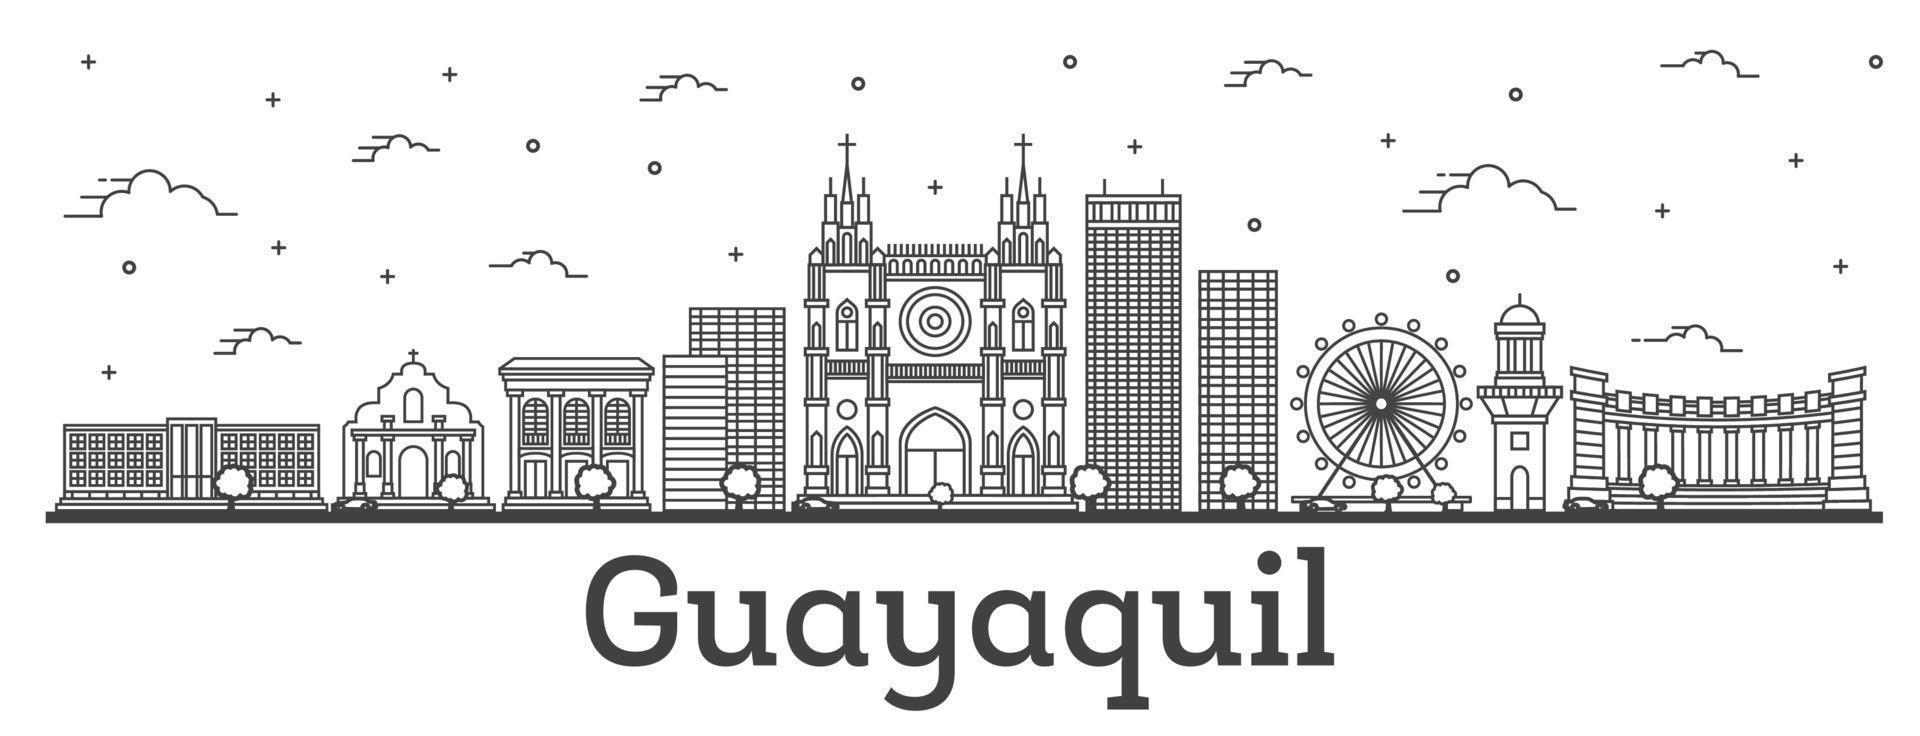 delineie o horizonte da cidade de guayaquil equador com edifícios históricos isolados no branco. vetor